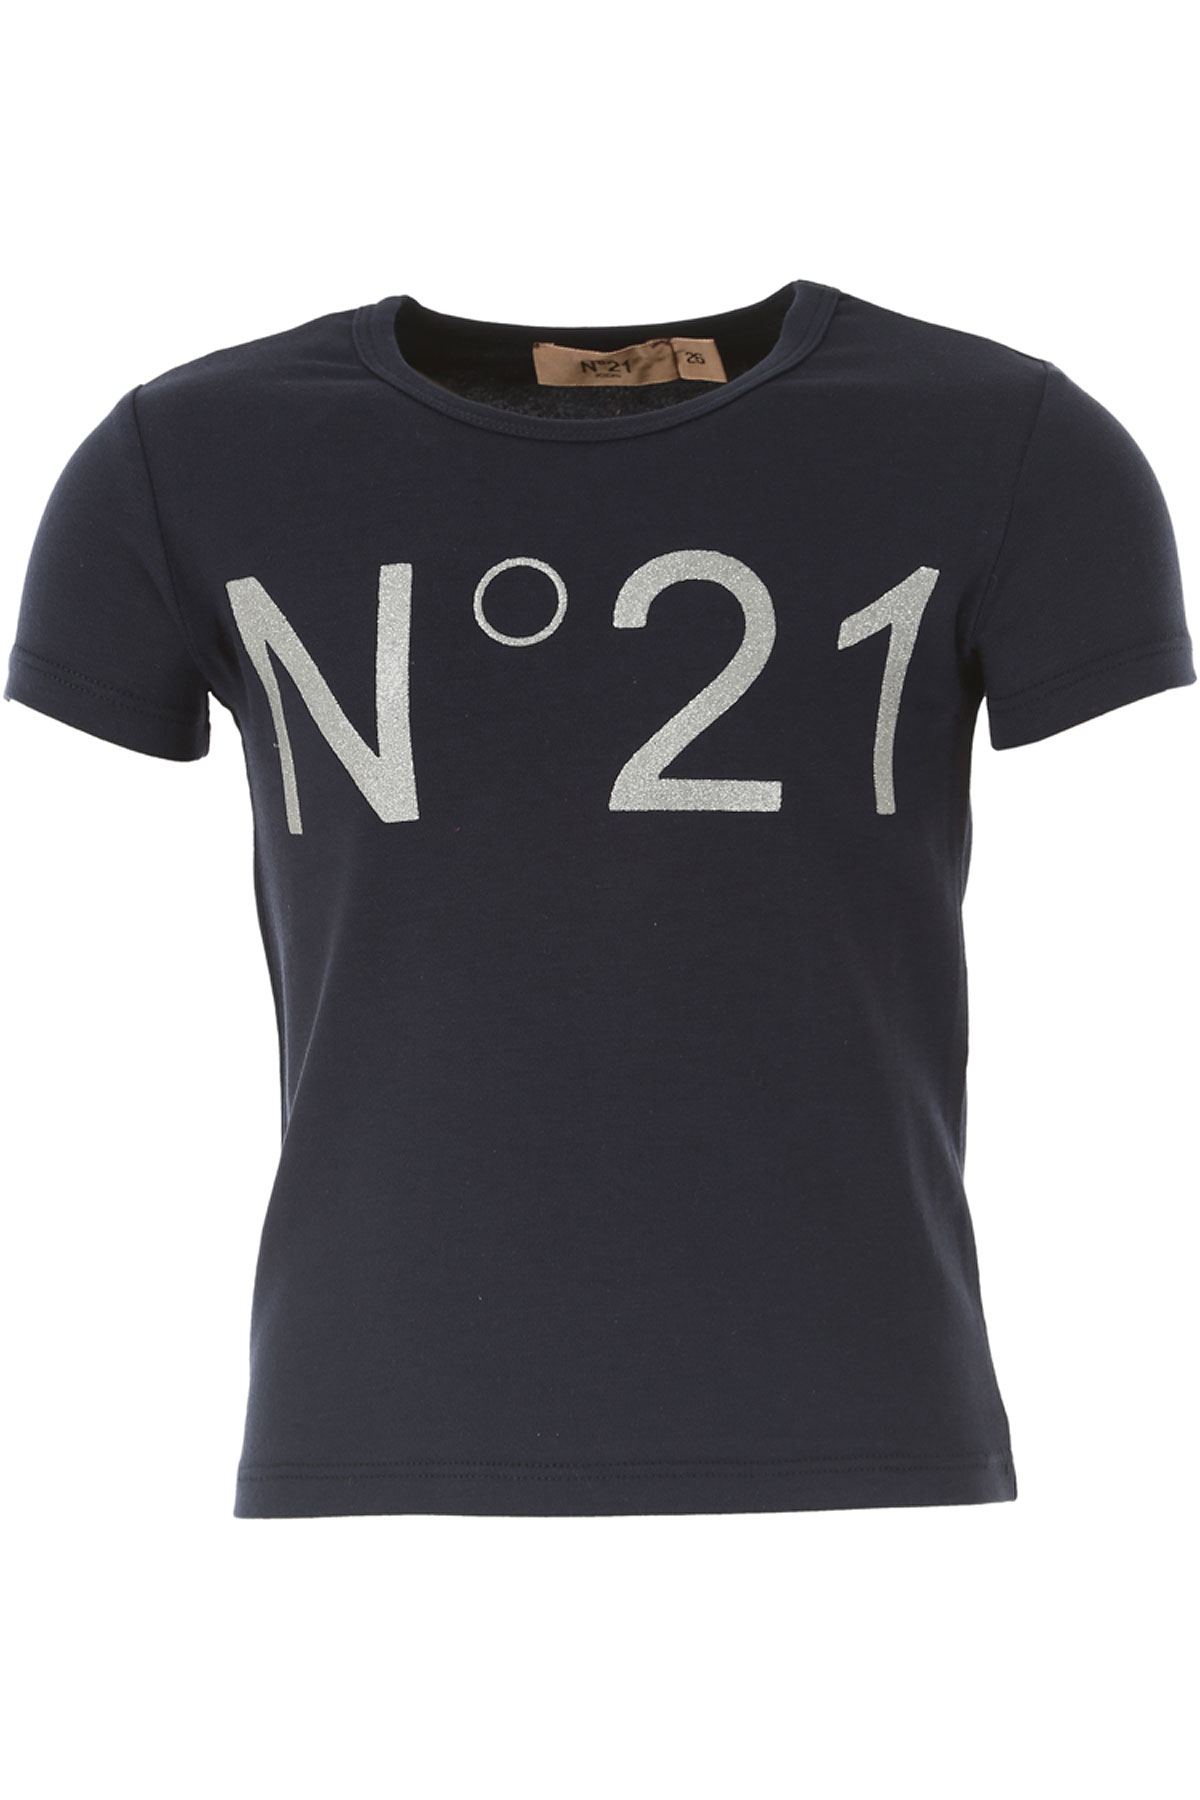 NO 21 Kinder T-Shirt für Mädchen Günstig im Outlet Sale, Blau, Baumwolle, 2017, 30 (6 Years) 34 (8 Years) 36 (9 Years)